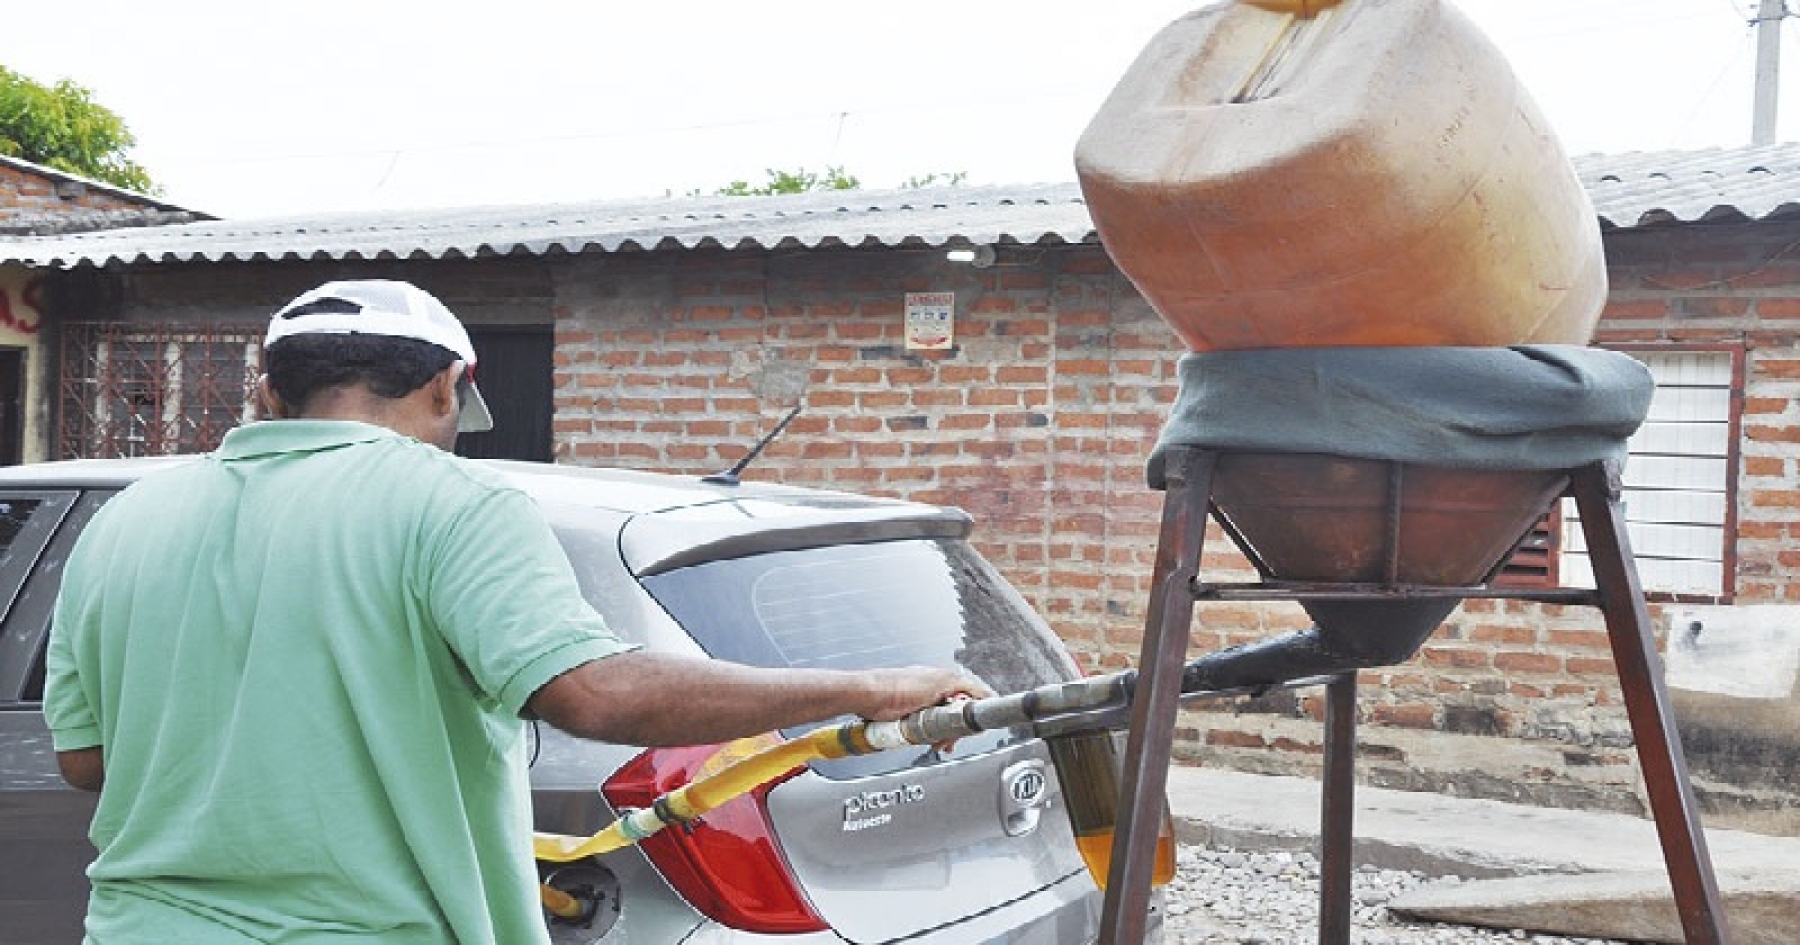 Sorprendente! Así fabrican gasolina artesanal en Venezuela